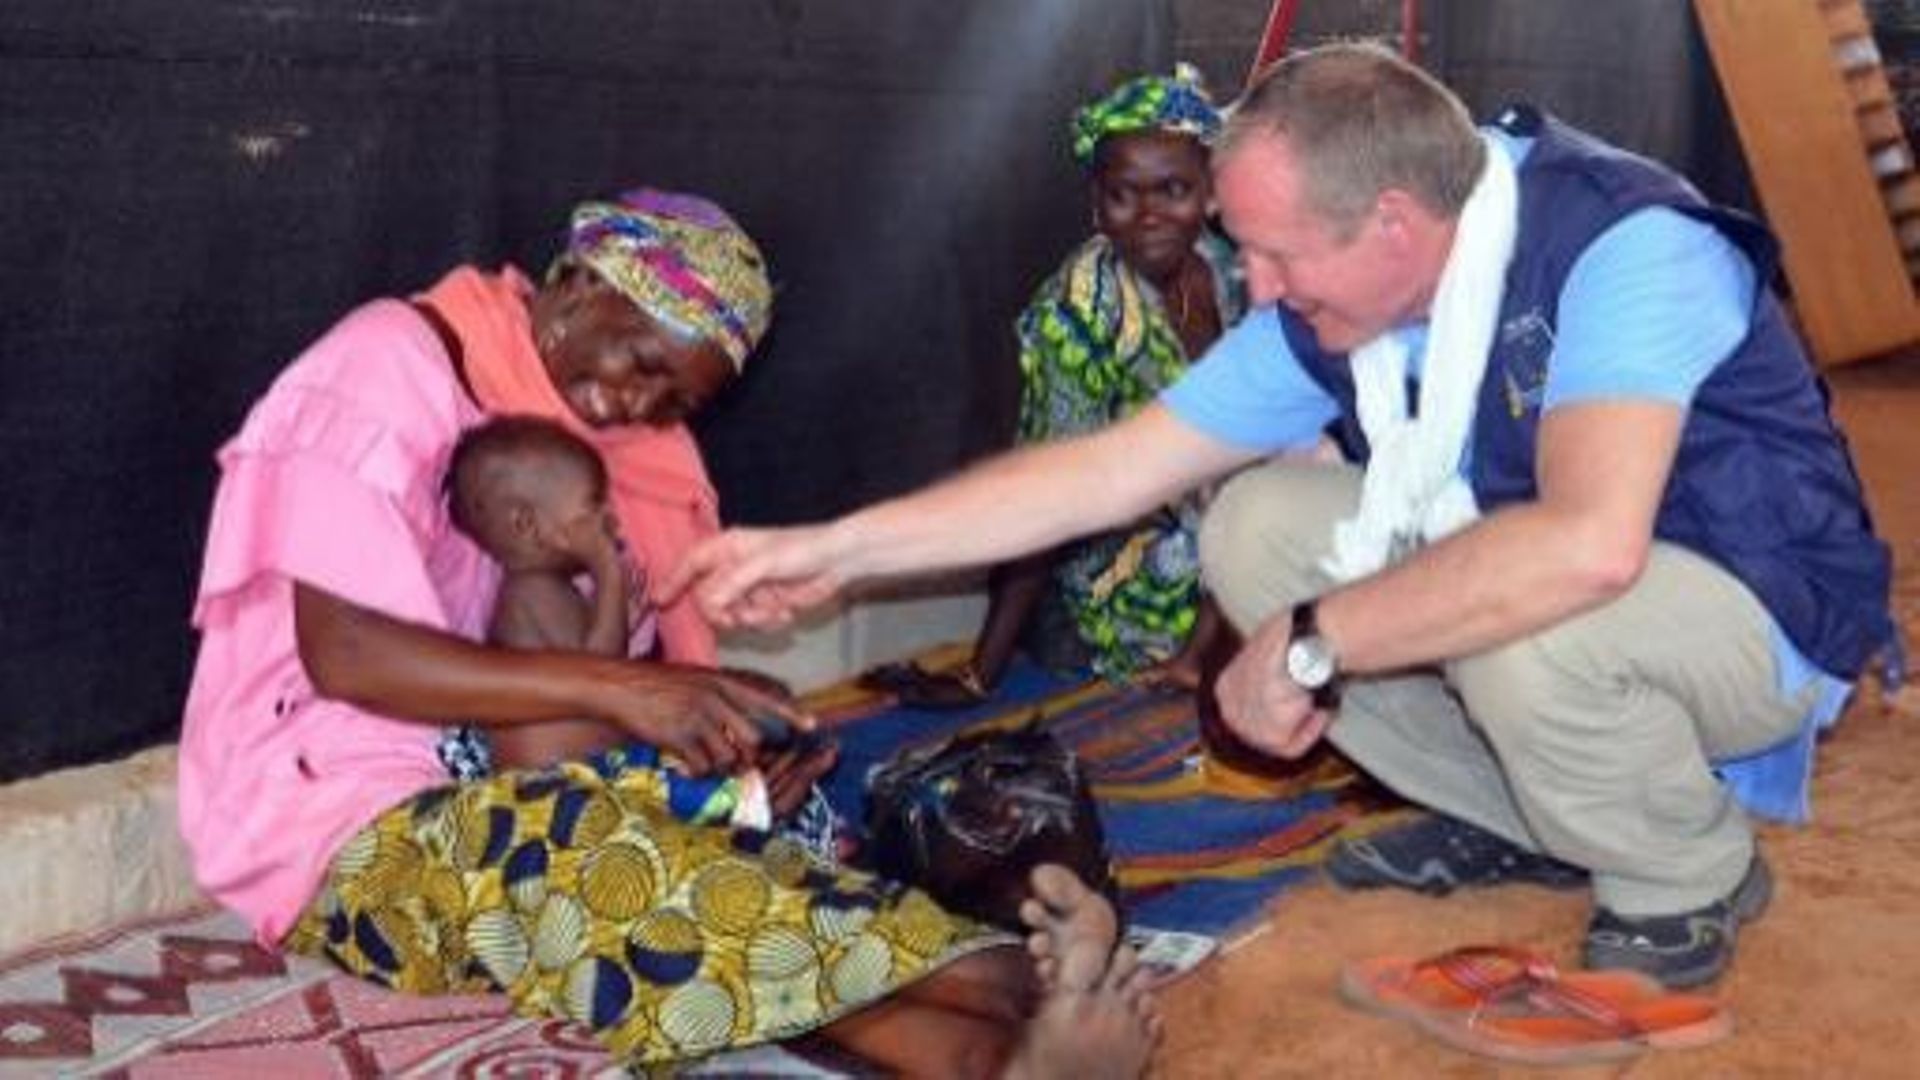 Dans le Sahel, plus de 10 millions de personnes sont menacées par la famine. Des ONG belges dénoncent la complicité des banques belges dans la spoliation des terres agricoles